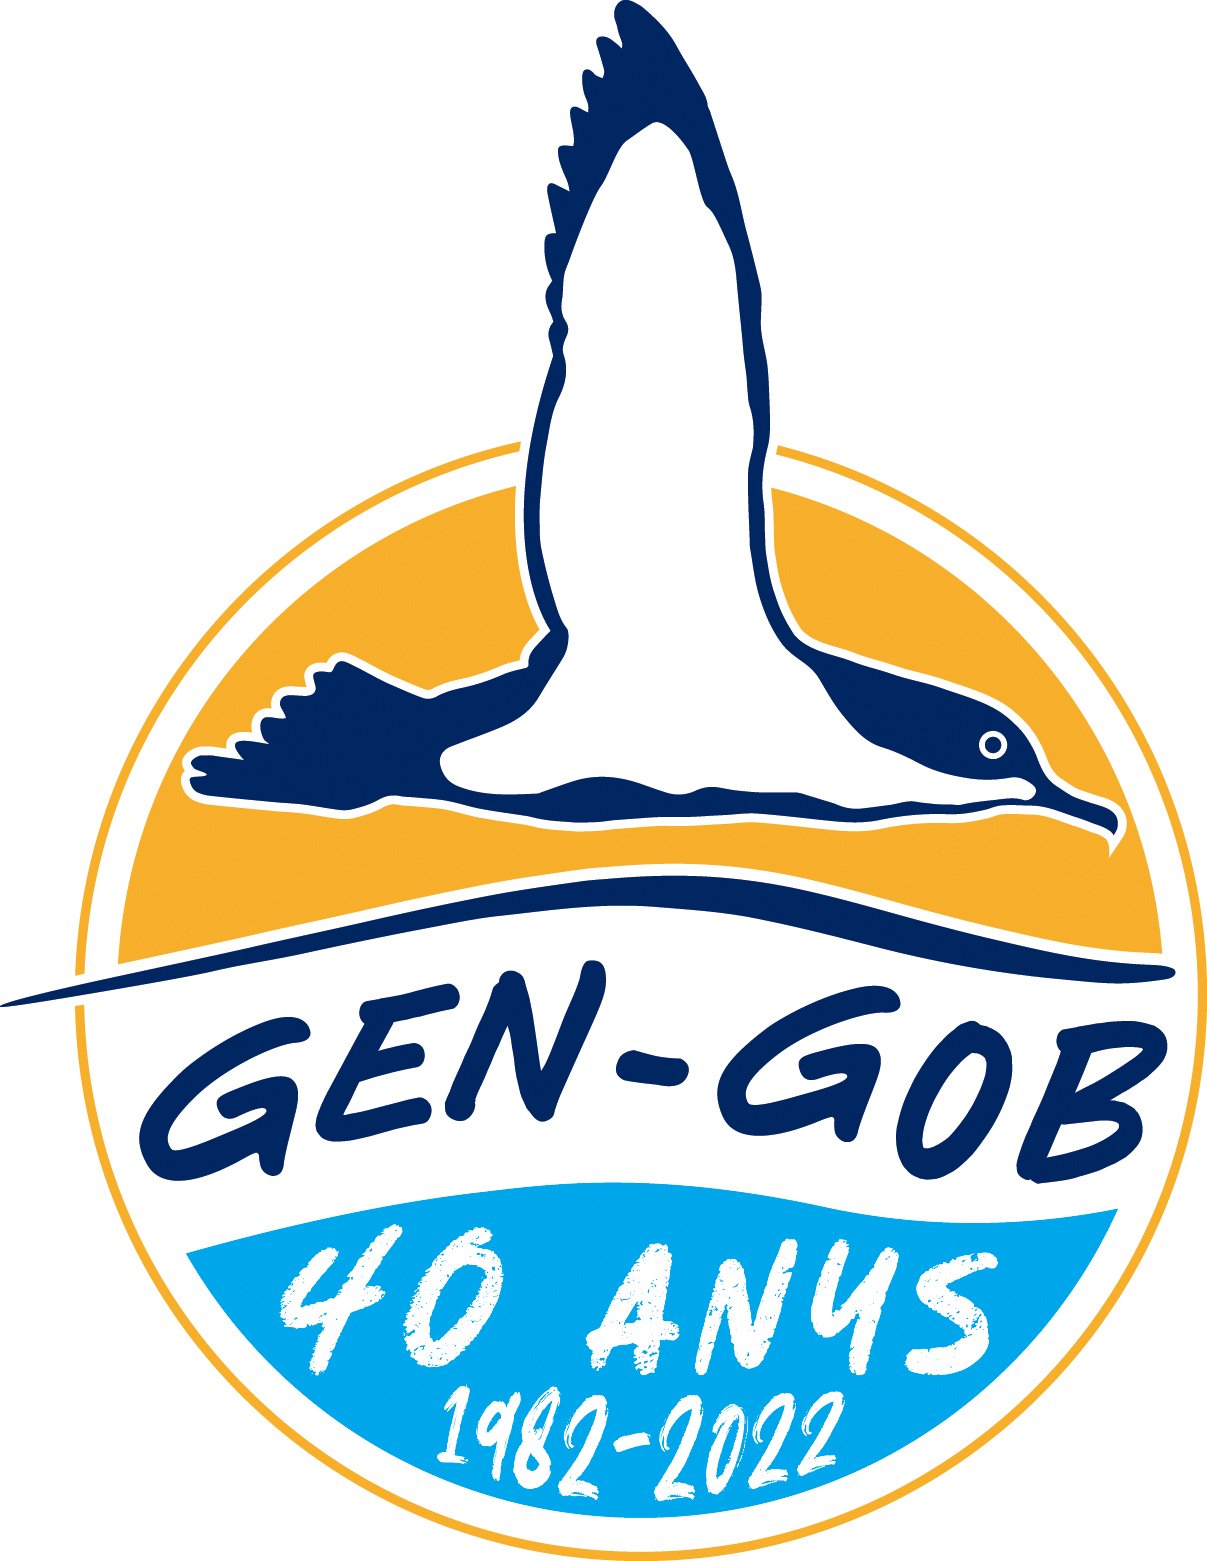 Gen Gob 2021 logo 40 anys.jpg